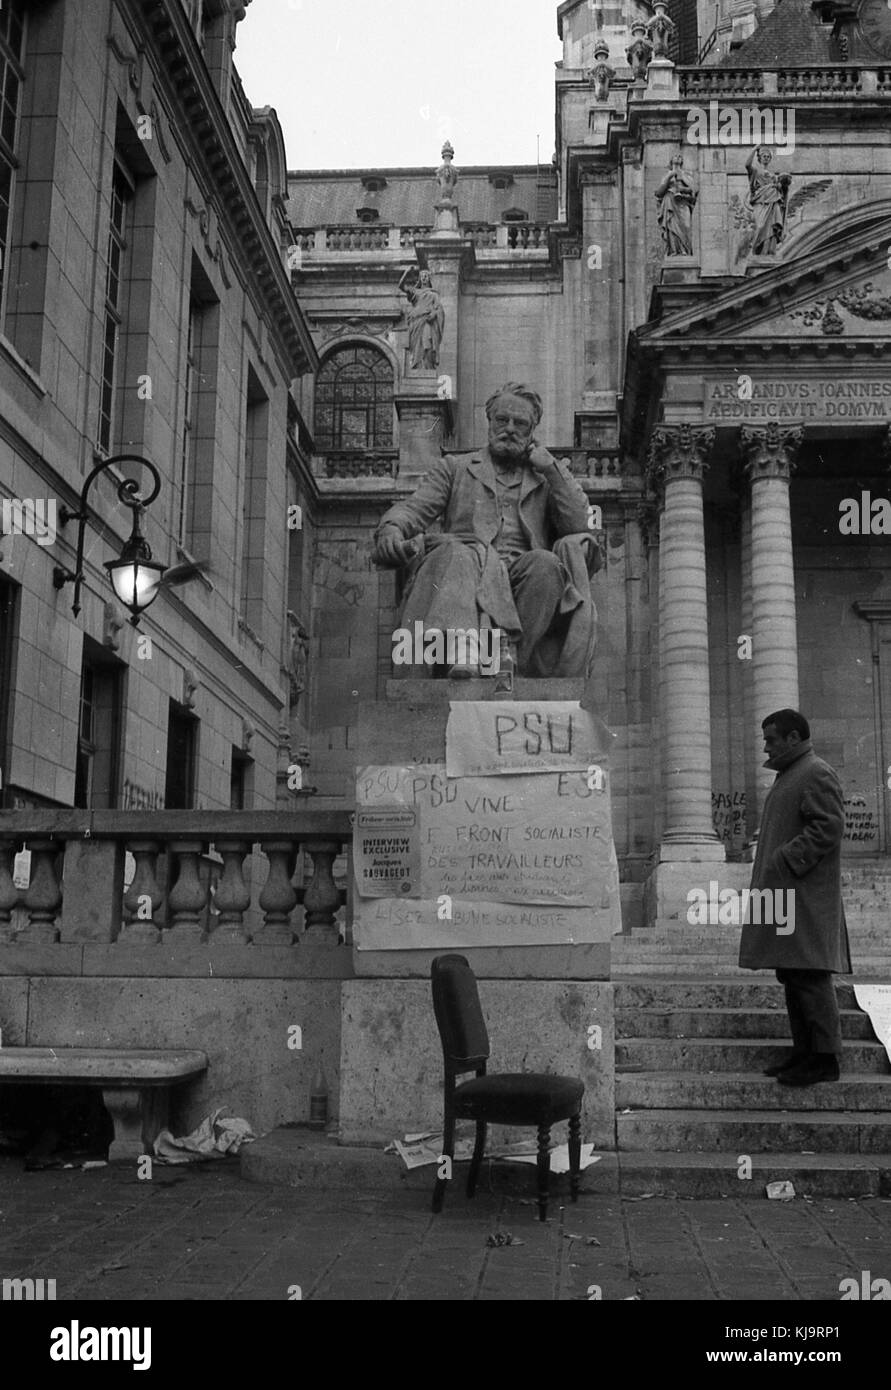 Philippe gras / le pictorium - mai 1968 - 1968 - France / Ile-de-France (région) / paris - statue de Victor Hugo. Banque D'Images